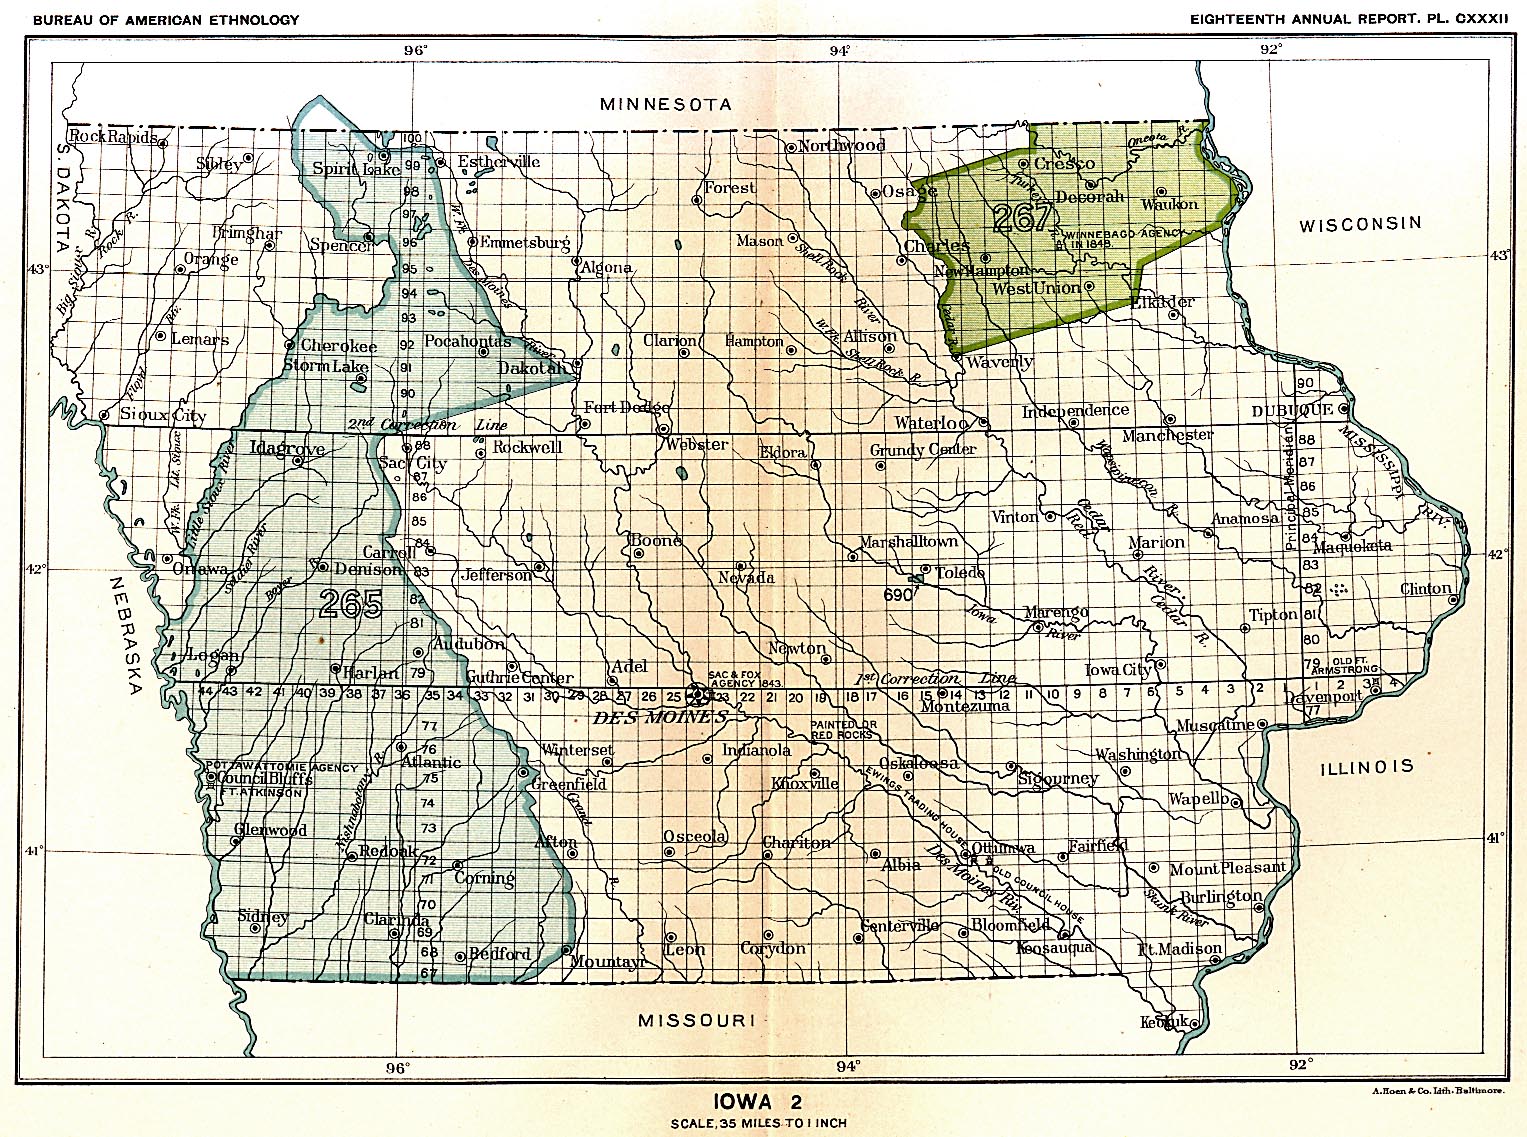 Iowa 2, Map 25